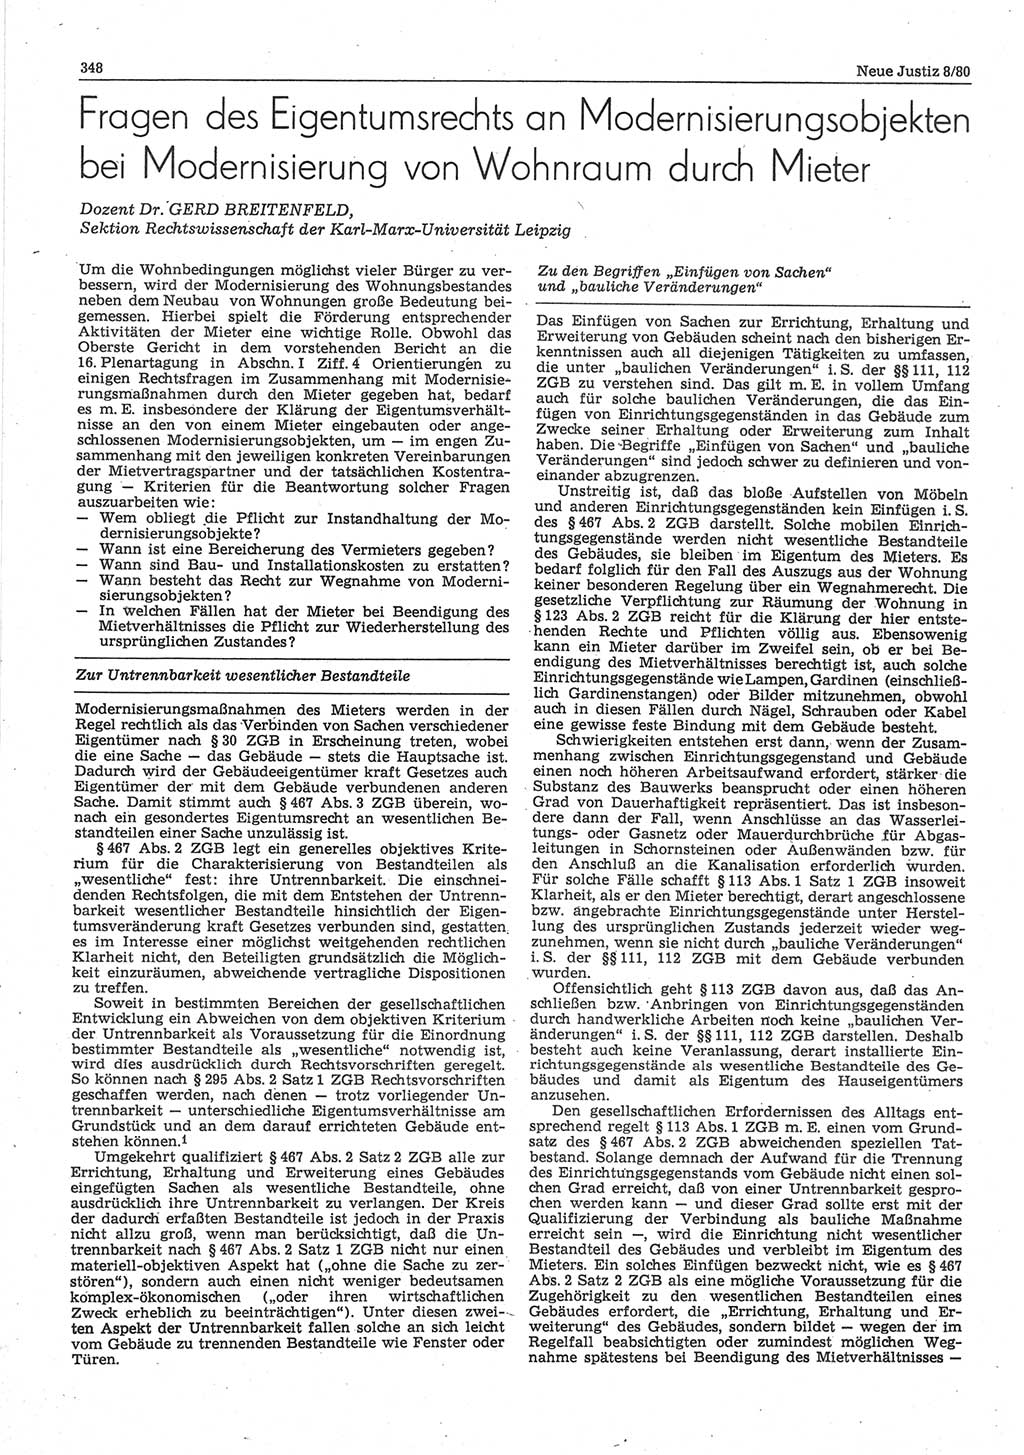 Neue Justiz (NJ), Zeitschrift für sozialistisches Recht und Gesetzlichkeit [Deutsche Demokratische Republik (DDR)], 34. Jahrgang 1980, Seite 348 (NJ DDR 1980, S. 348)